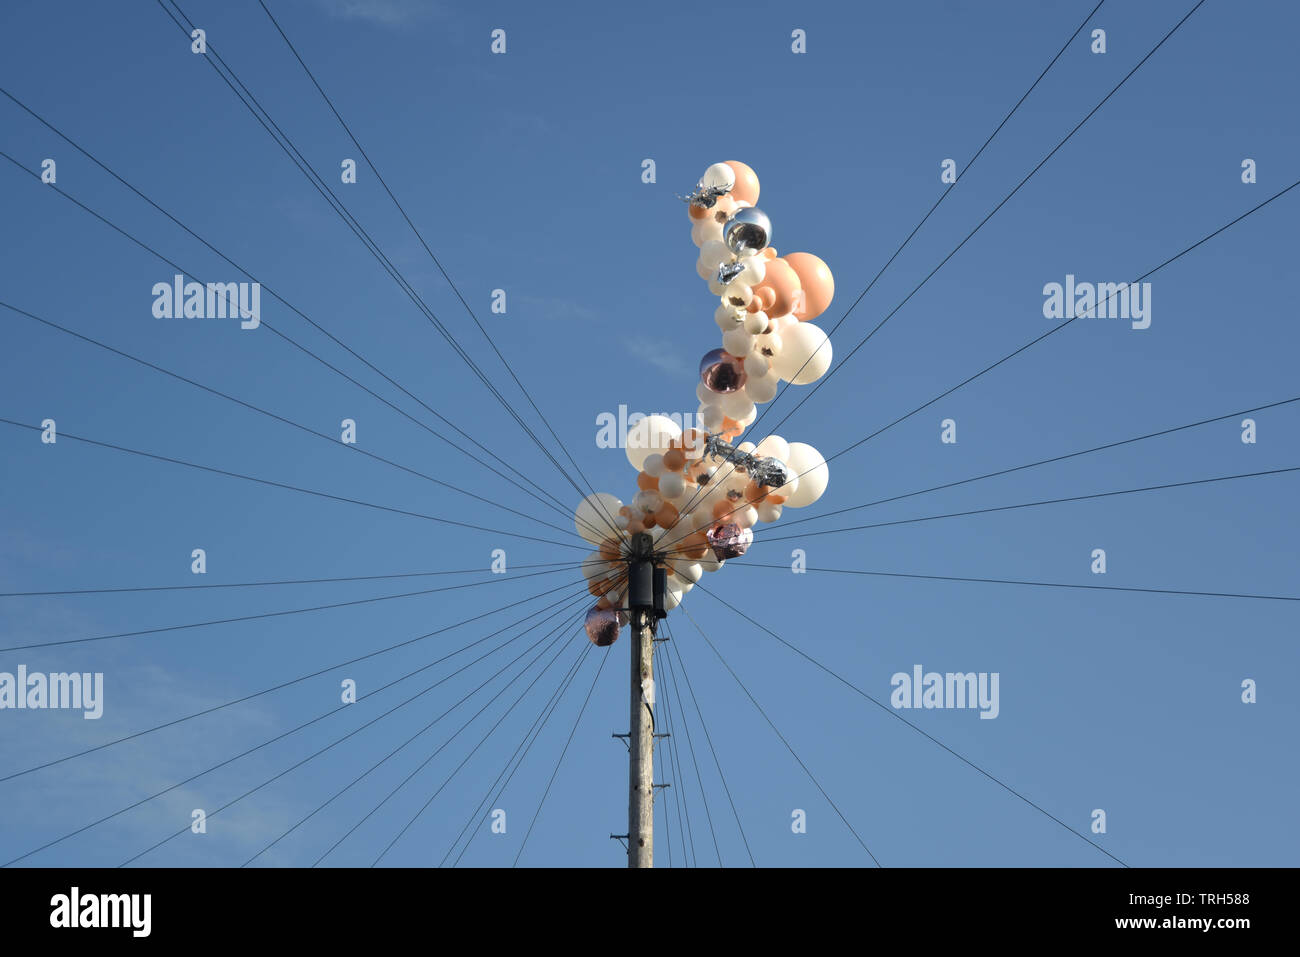 Los globos capturados en cables telefónicos Foto de stock